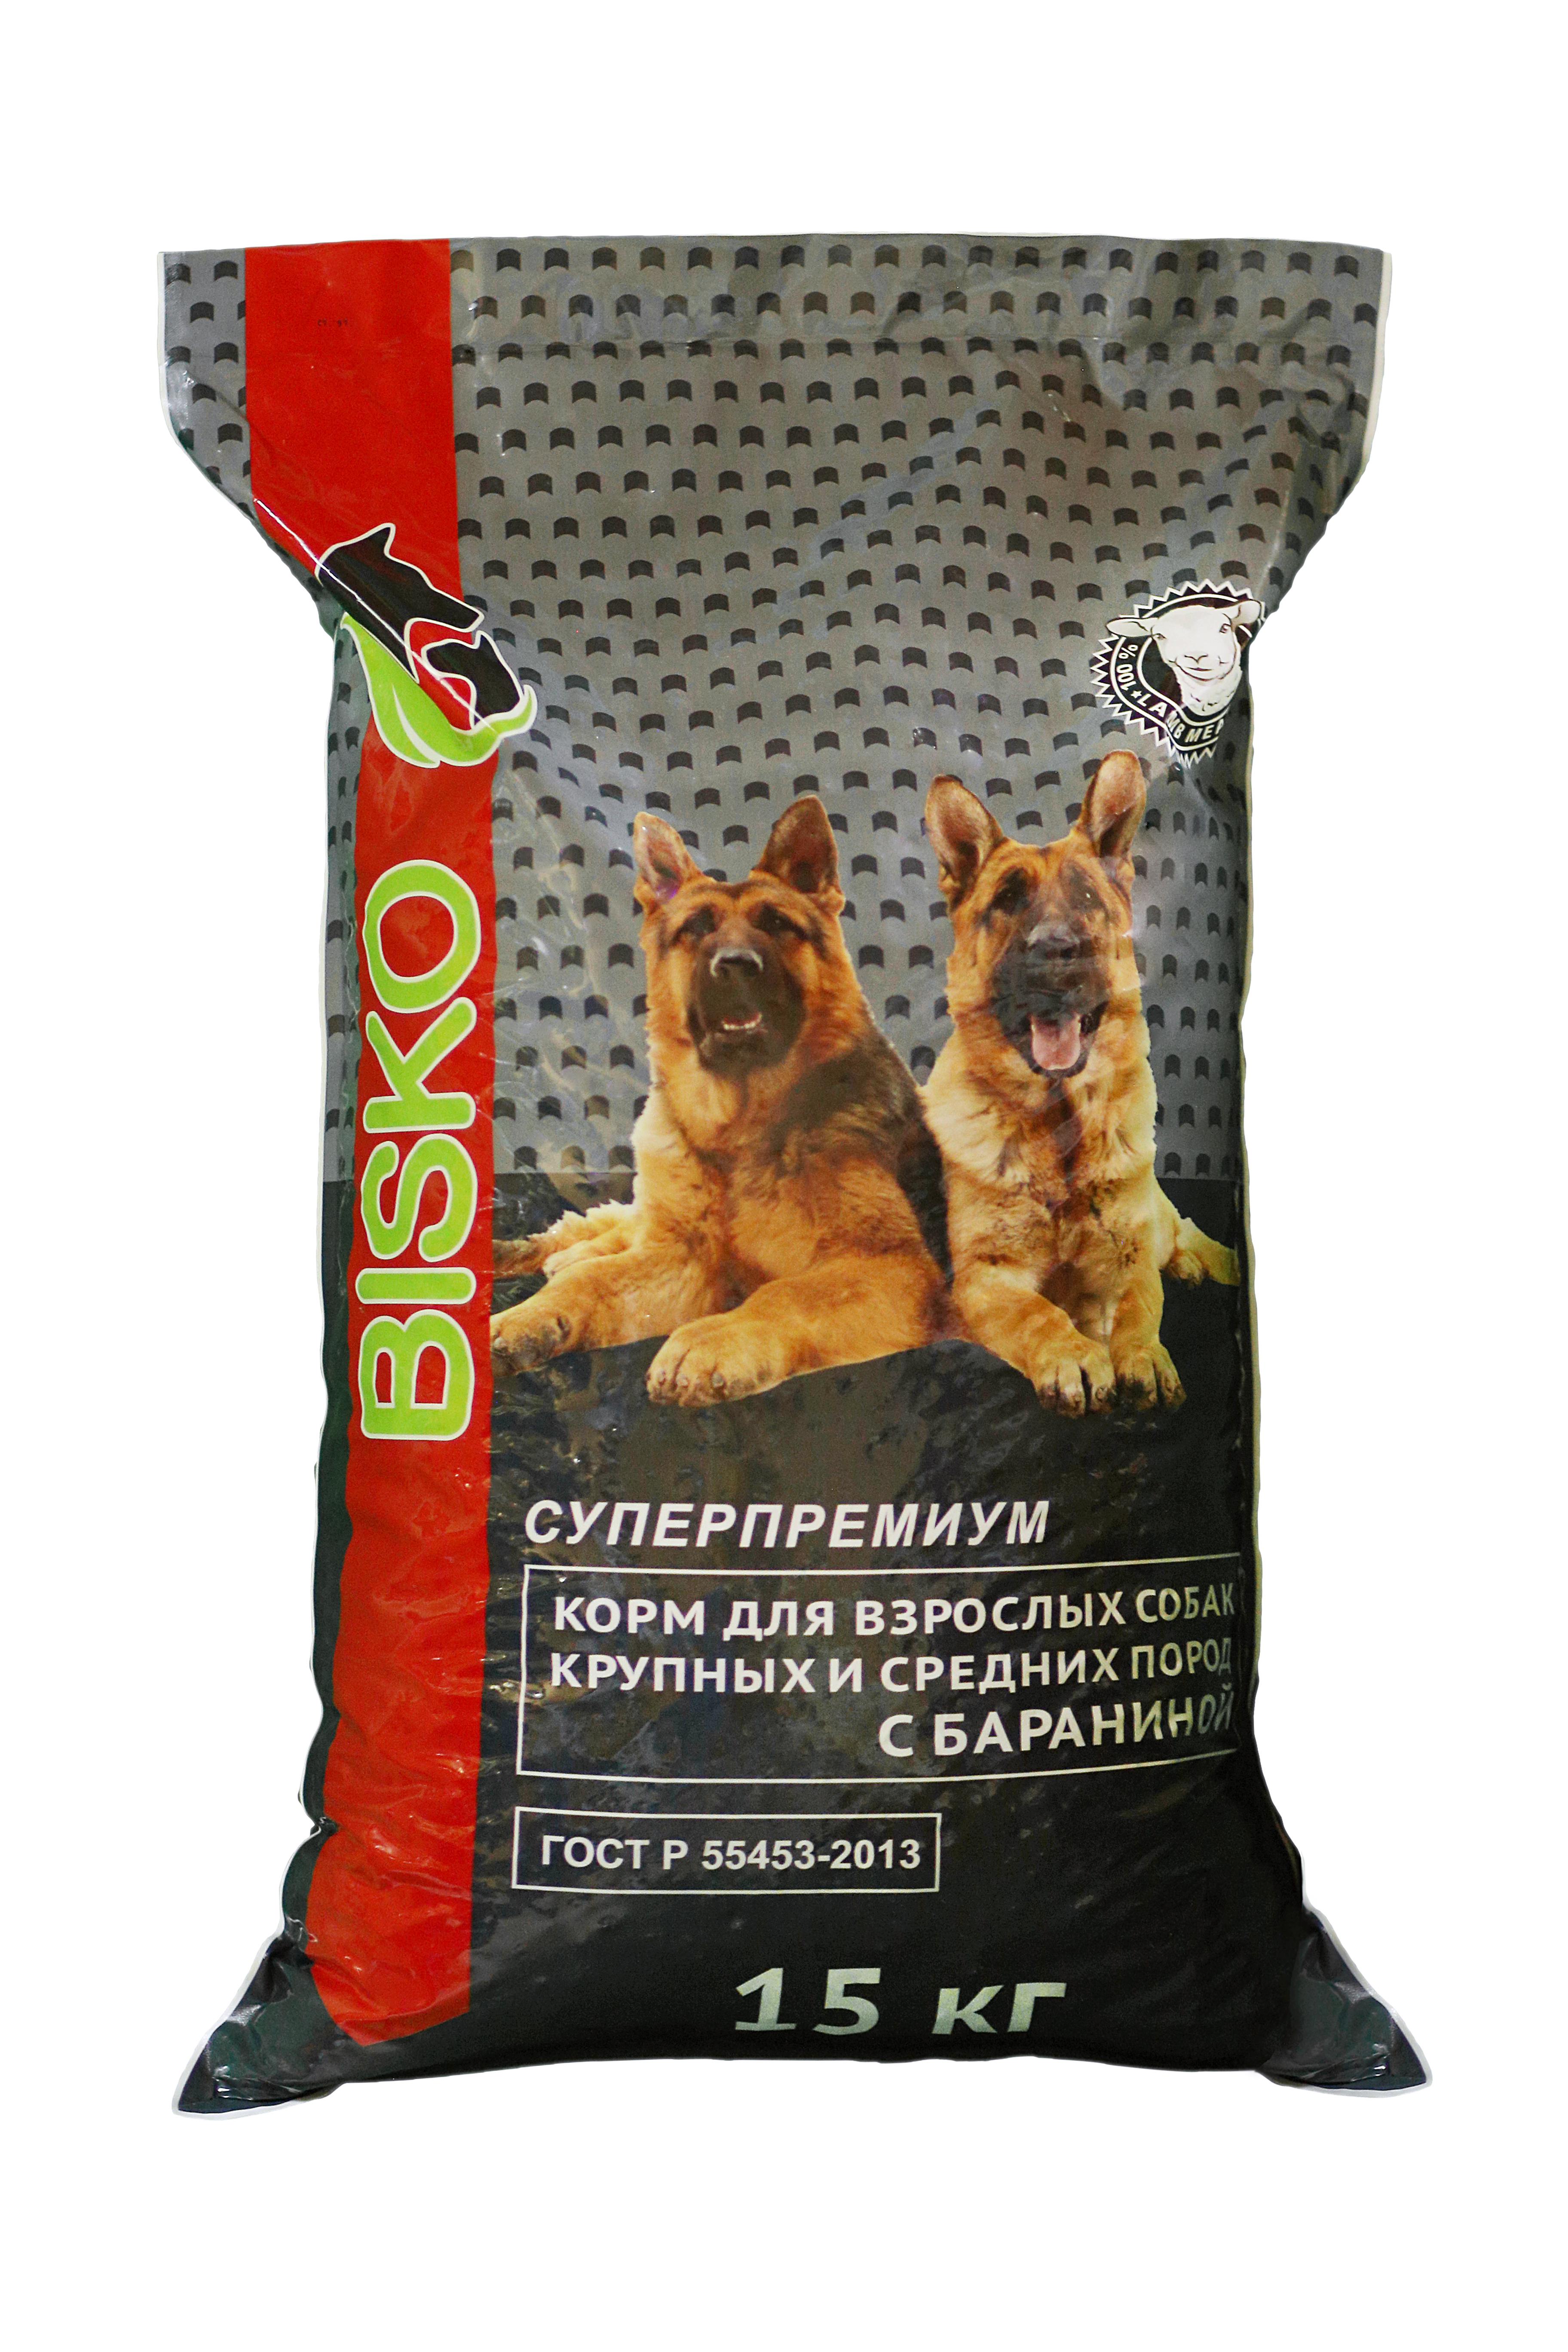 Купить корм для собаки ростов. Биско премиум корм для собак. Bisko Premium корм для собак 15кг. Корм Bisco для собак с бараниной. Bisko Биско премиум для крупных собак 15кг.